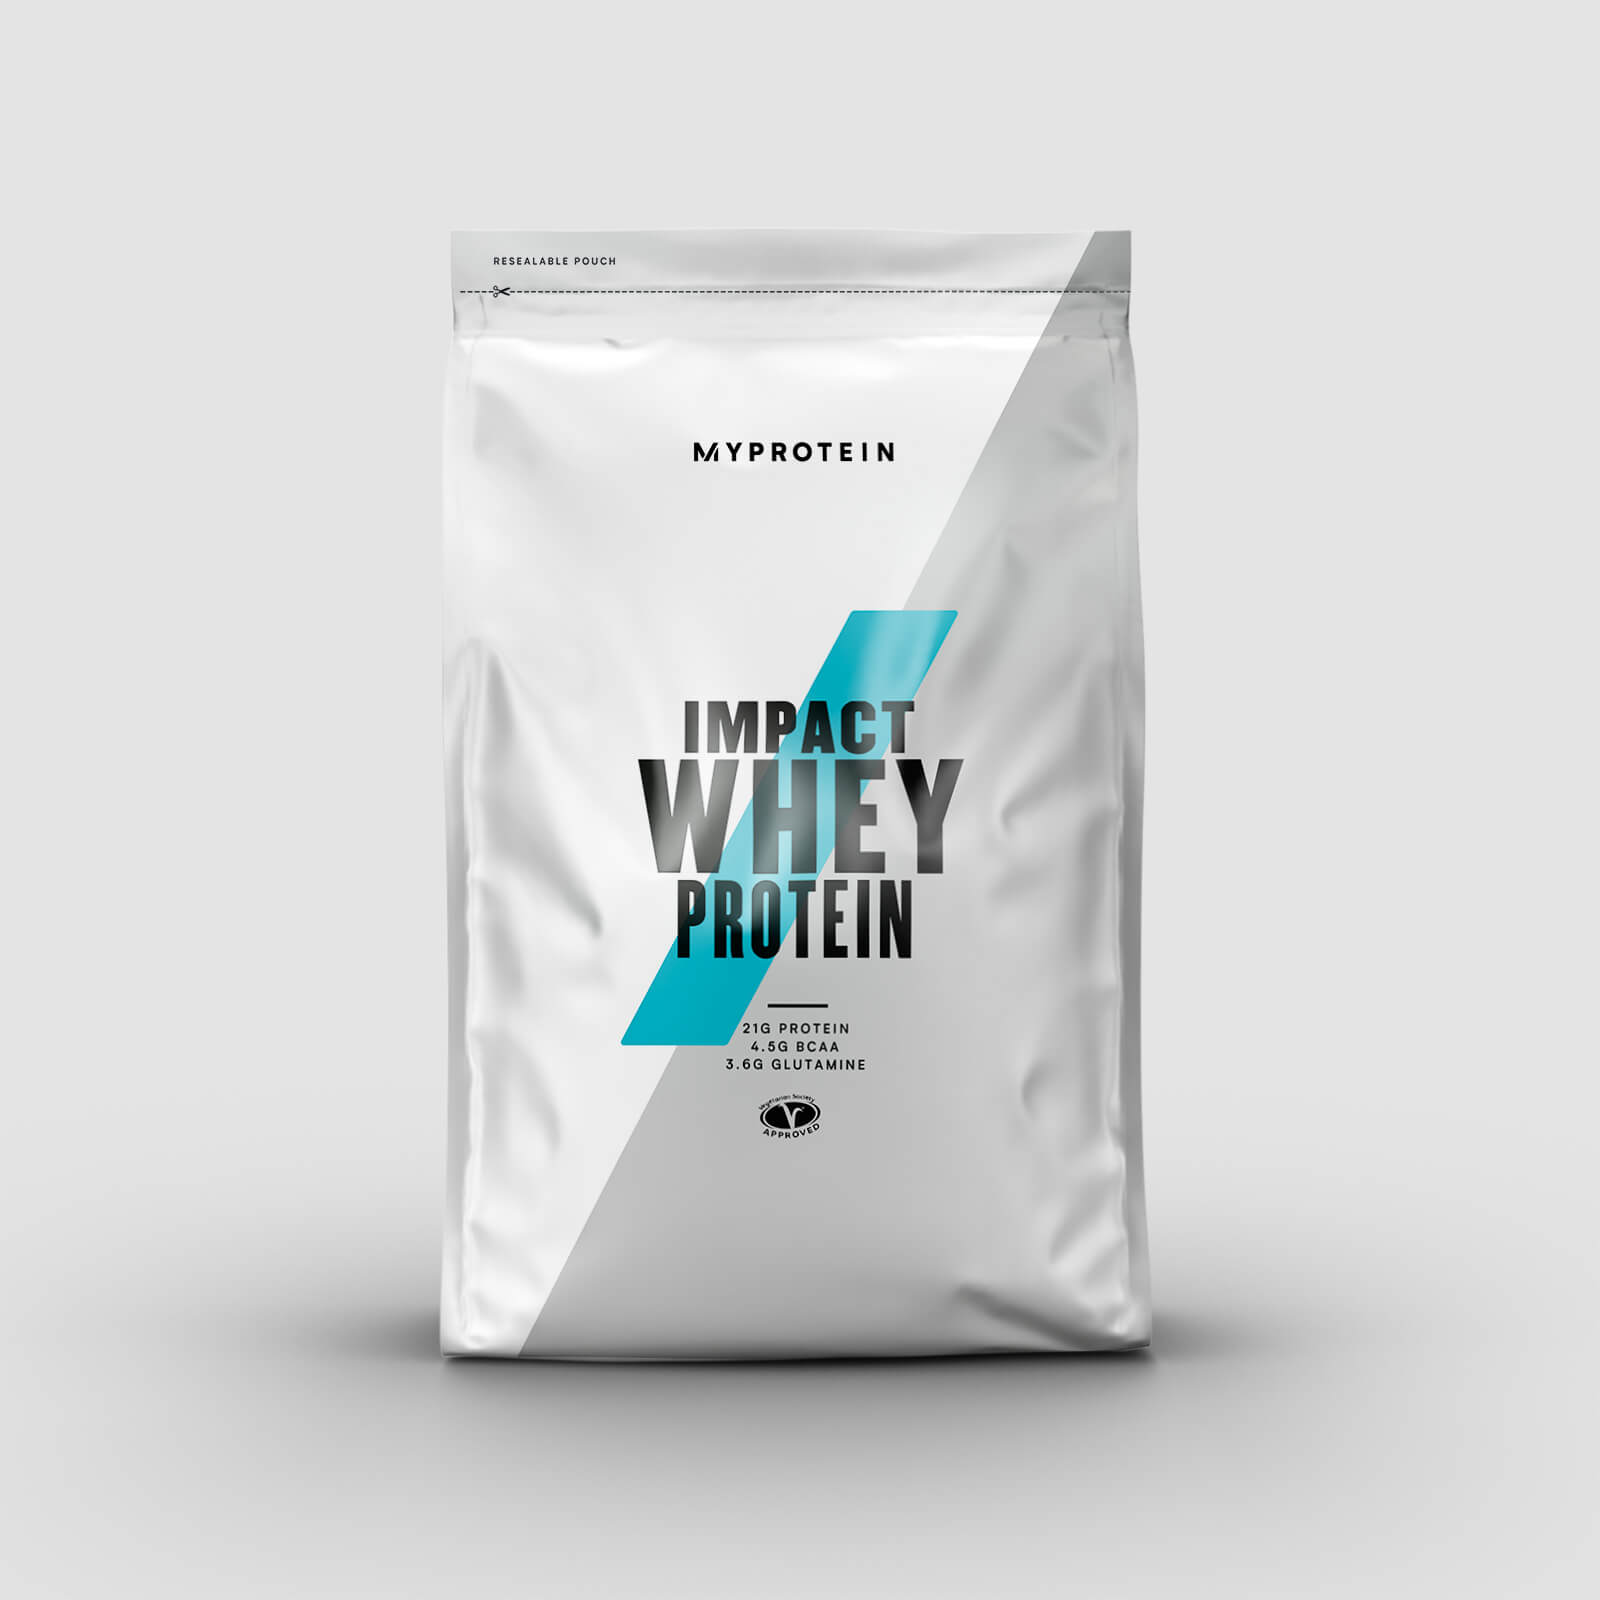 Myprotein Impact Whey Protein - 2.5kg - White Chocolate